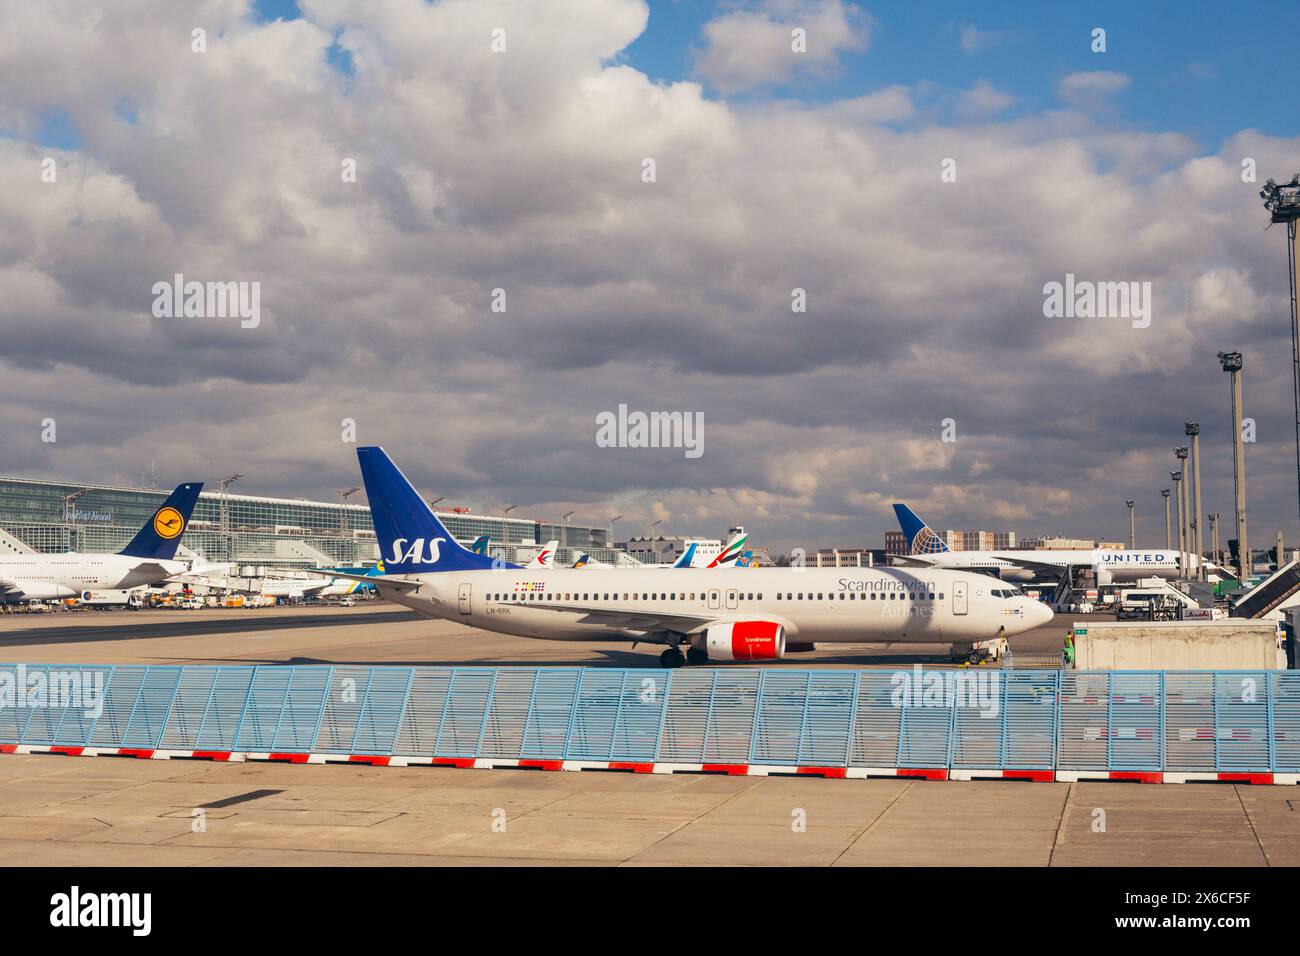 FRANCFORT, ALLEMAGNE - 13 février : Lufhansa, SAS et United Airlines avions sur l'aéroport de Francfort le 13,2018 février à Francfort, Allemagne. Banque D'Images